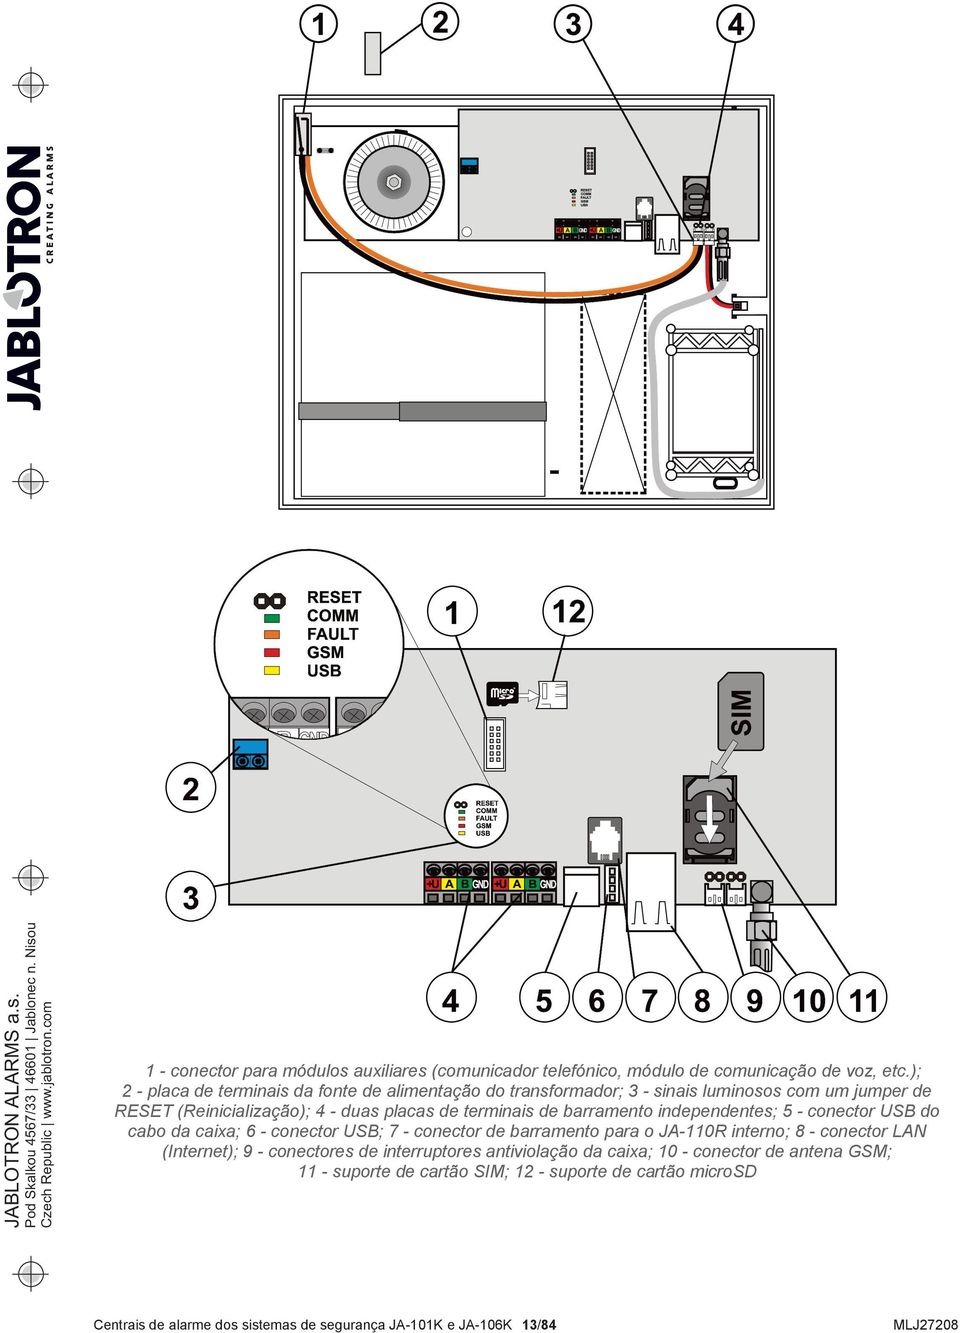 ); 2 - placa de terminais da fonte de alimentação do transformador; 3 - sinais luminosos com um jumper de RESET (Reinicialização); 4 - duas placas de terminais de barramento